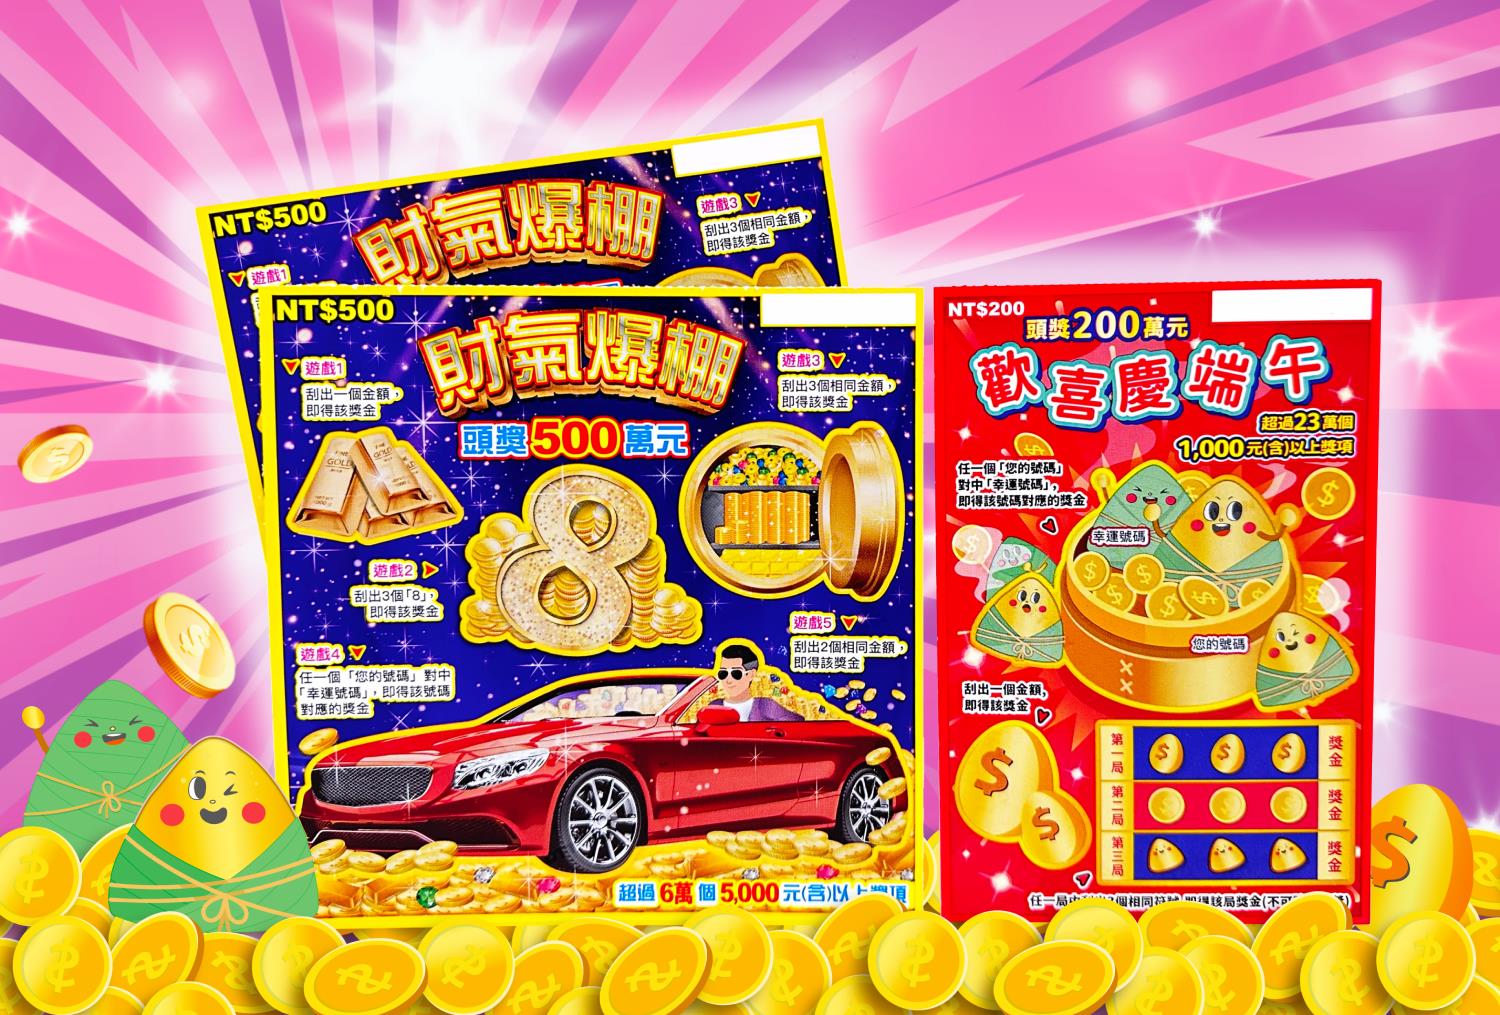 台湾彩券公司7日推出「财气爆棚」及「欢喜庆端午」2款刮刮乐新品，要与民众热享初夏刮奖趣。